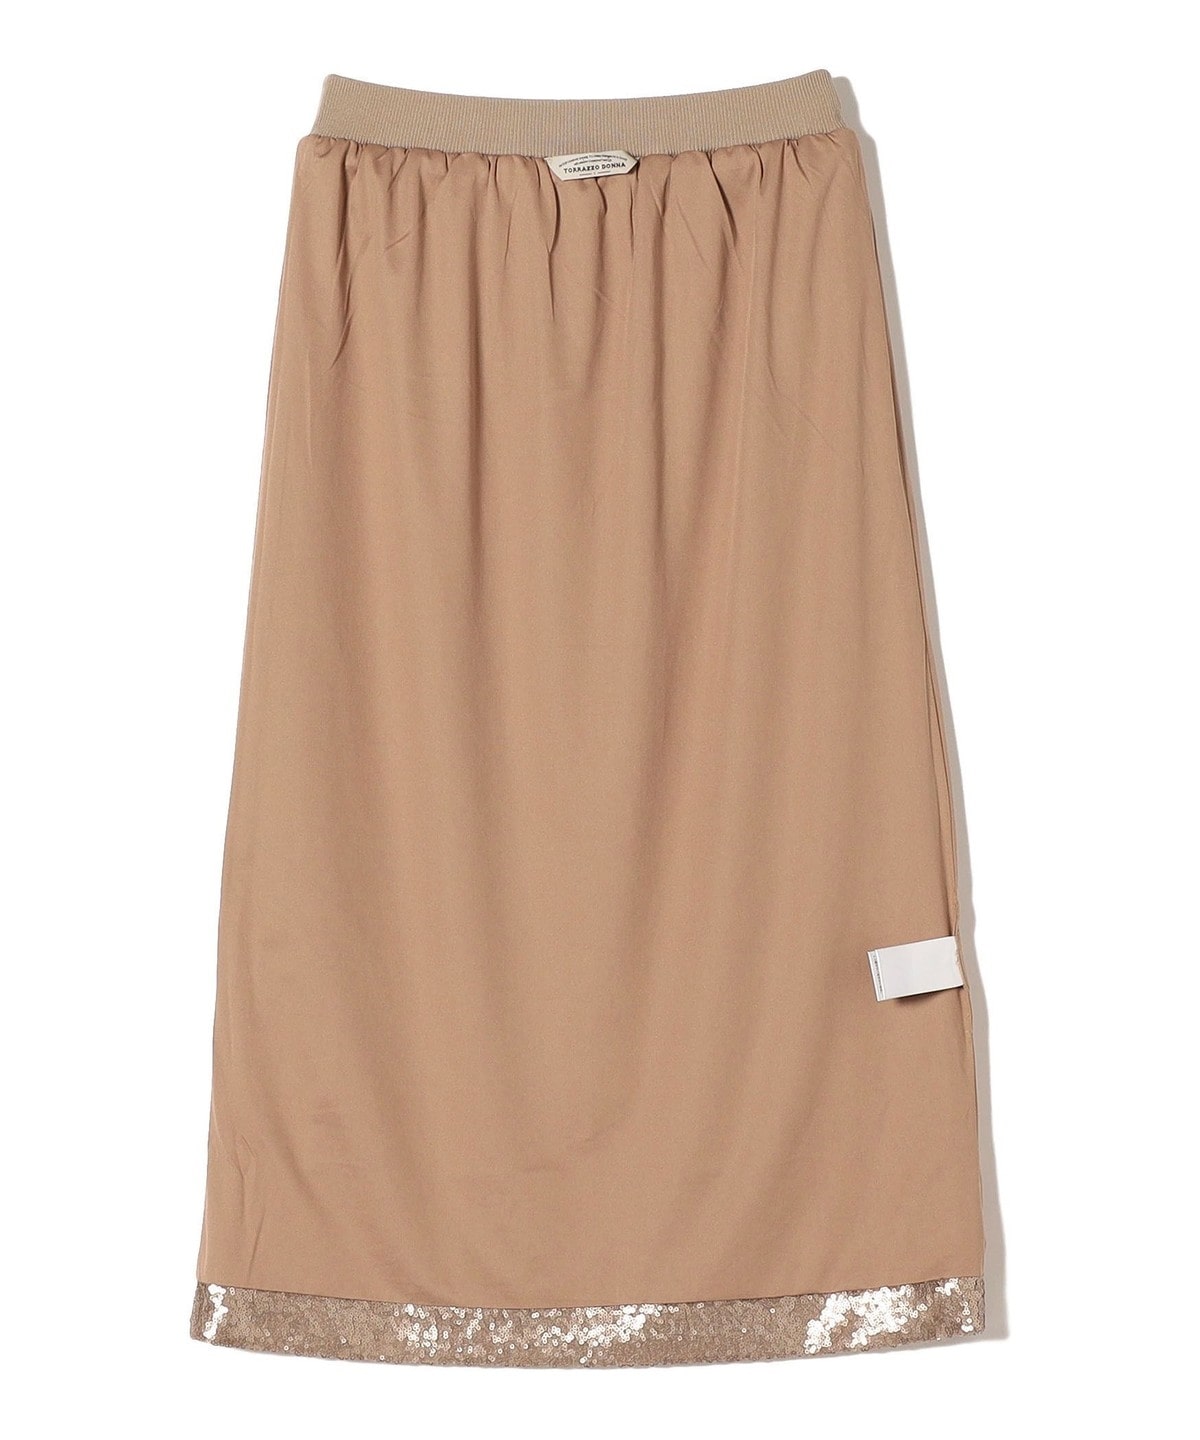 TORRAZZO DONNA:スパンコール スカート: スカート SHIPS 公式サイト 